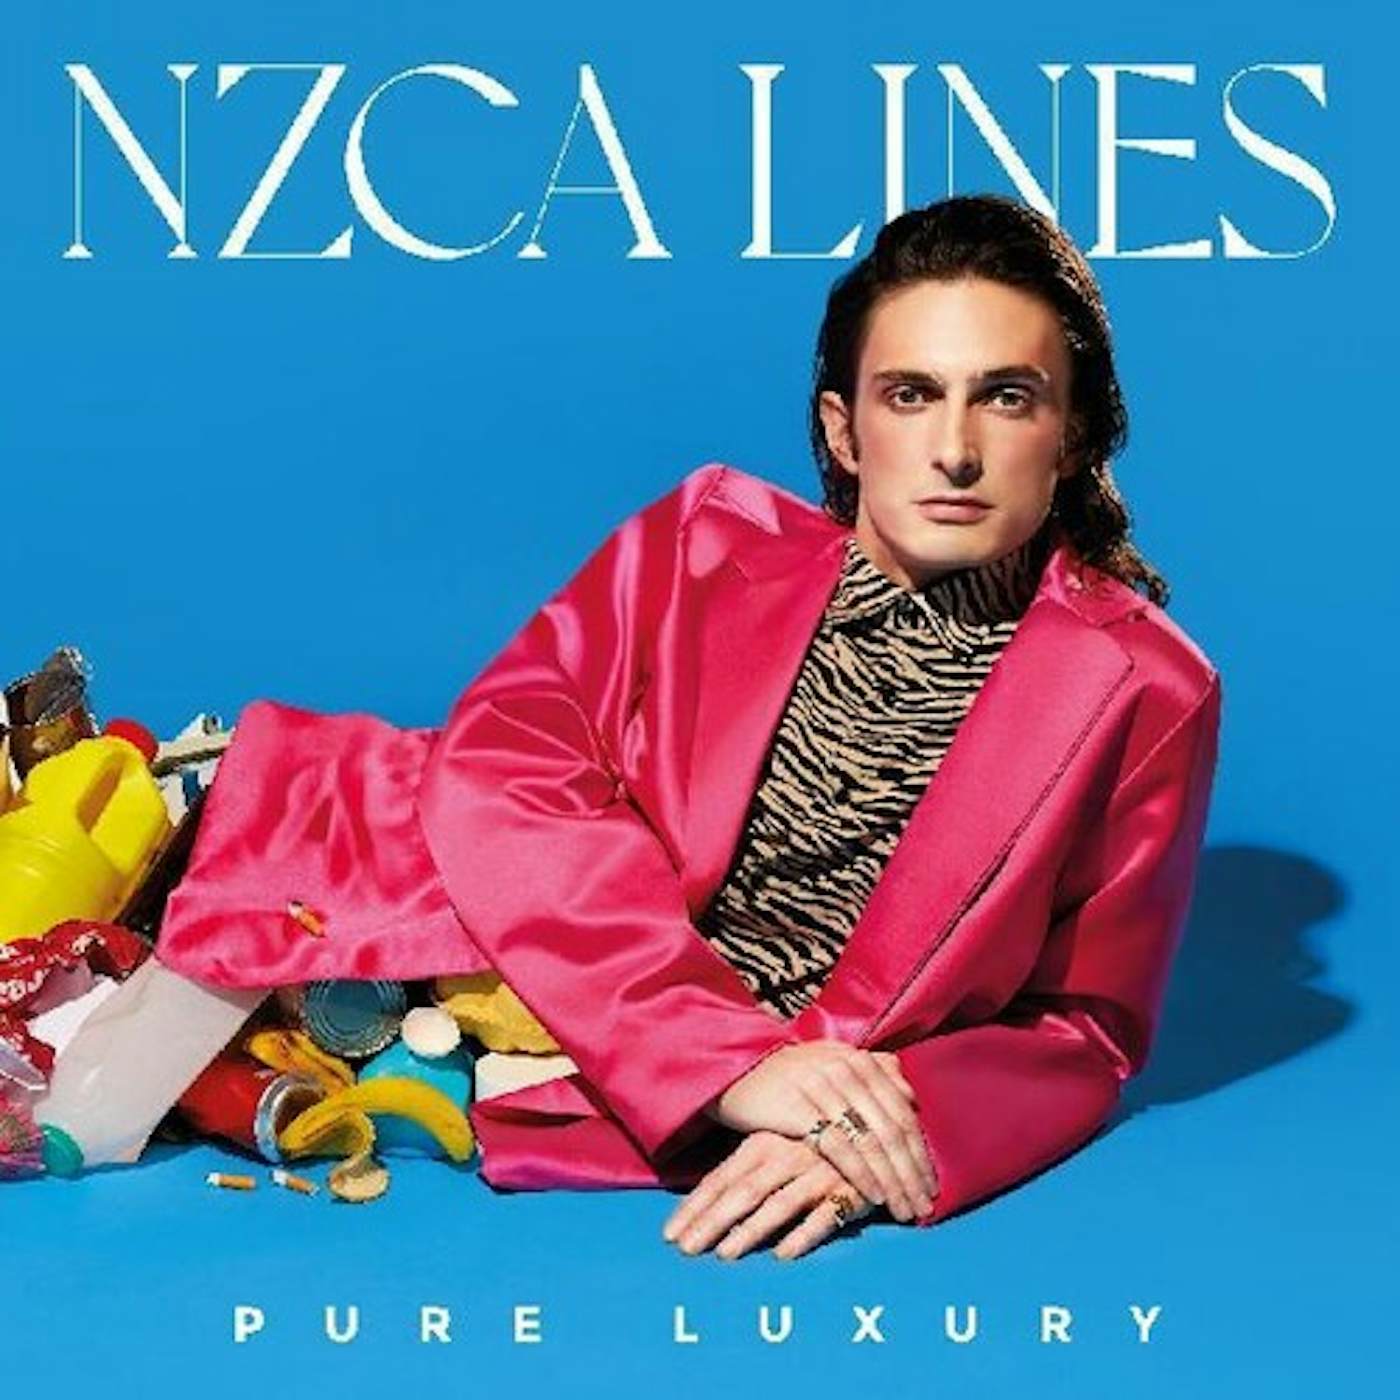 NZCA LINES PURE LUXURY CD